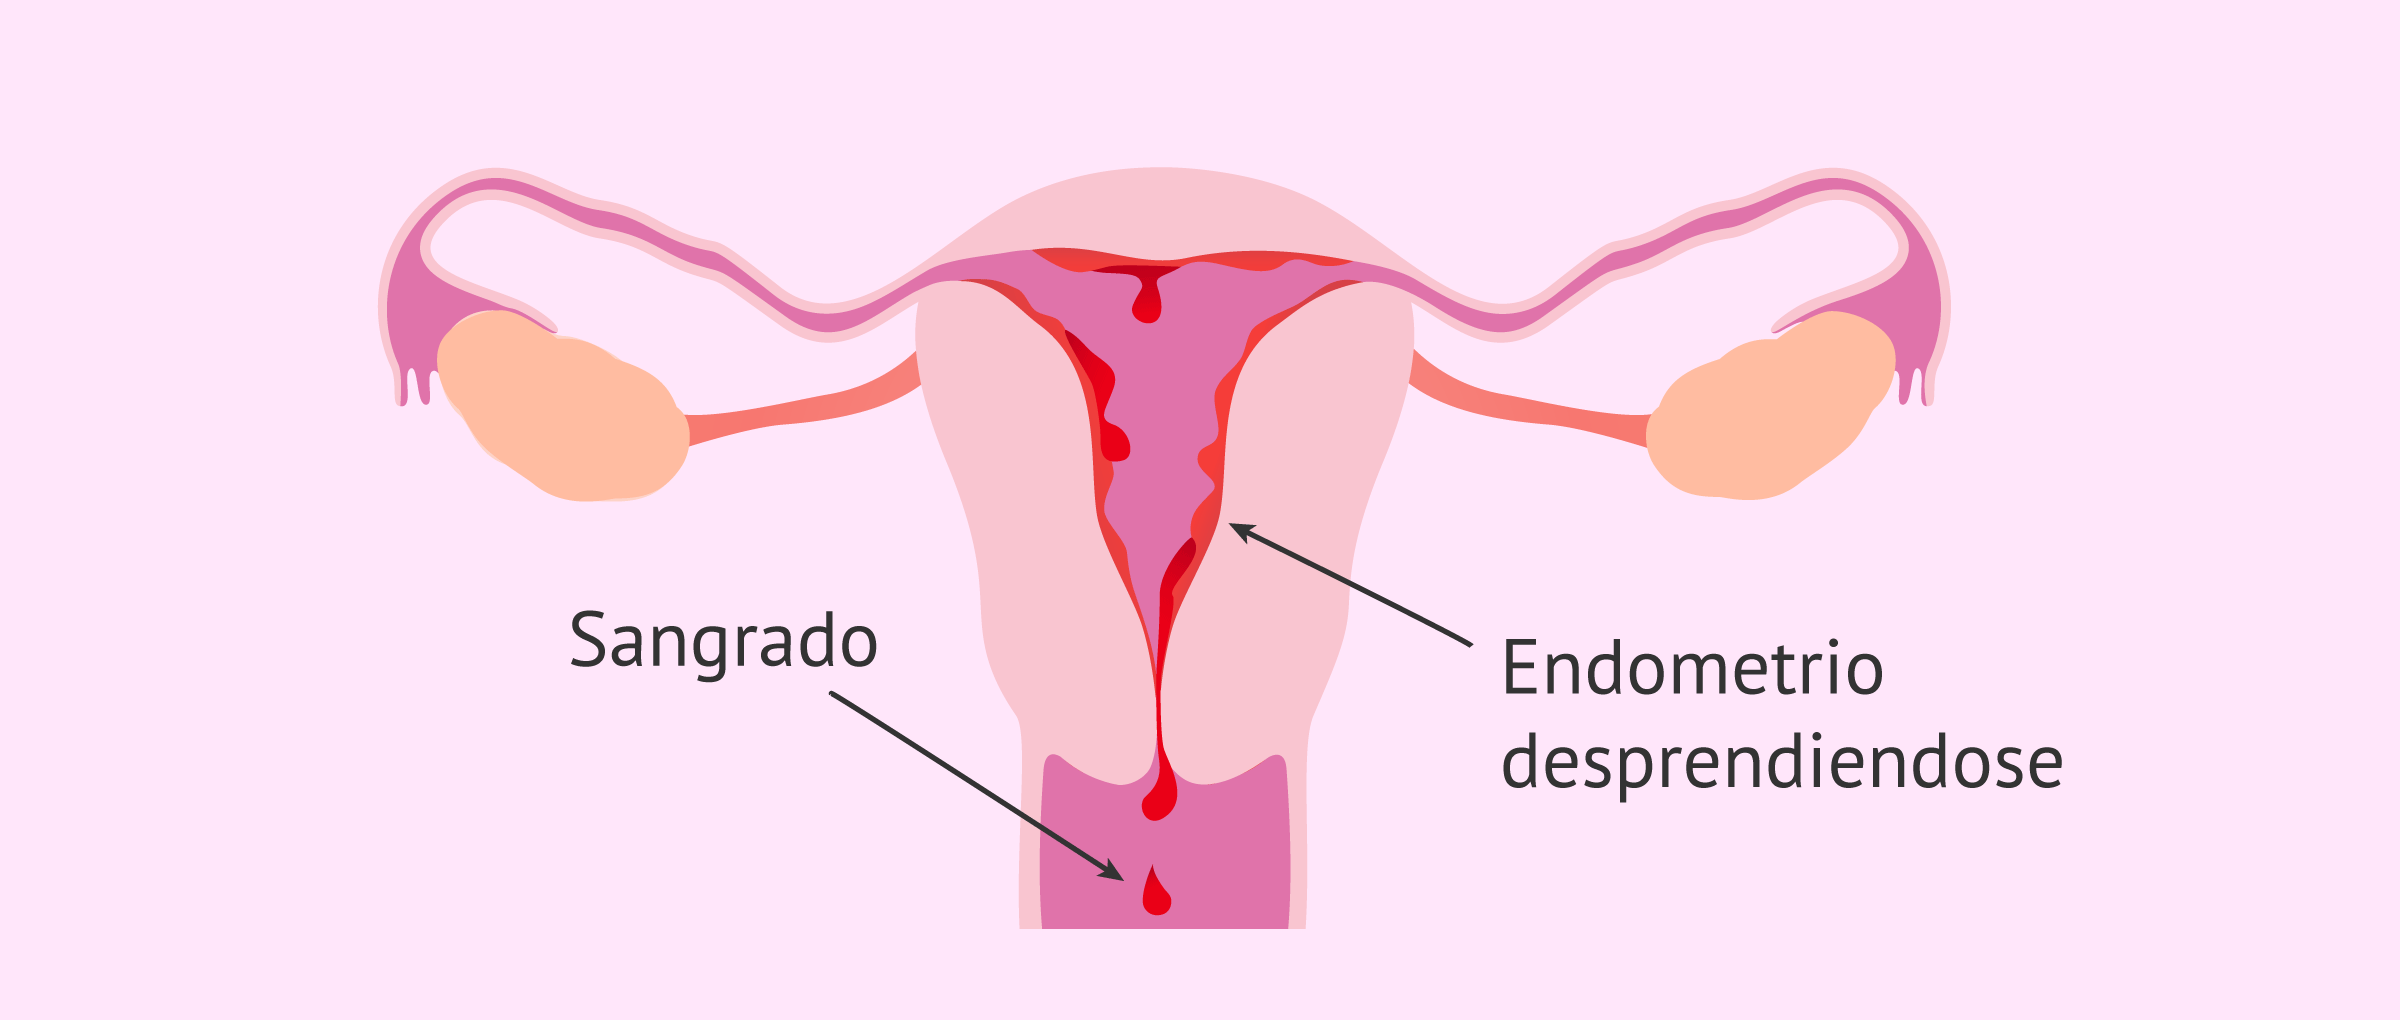 ¿Qué ocurre con el endometrio en la menstruación?